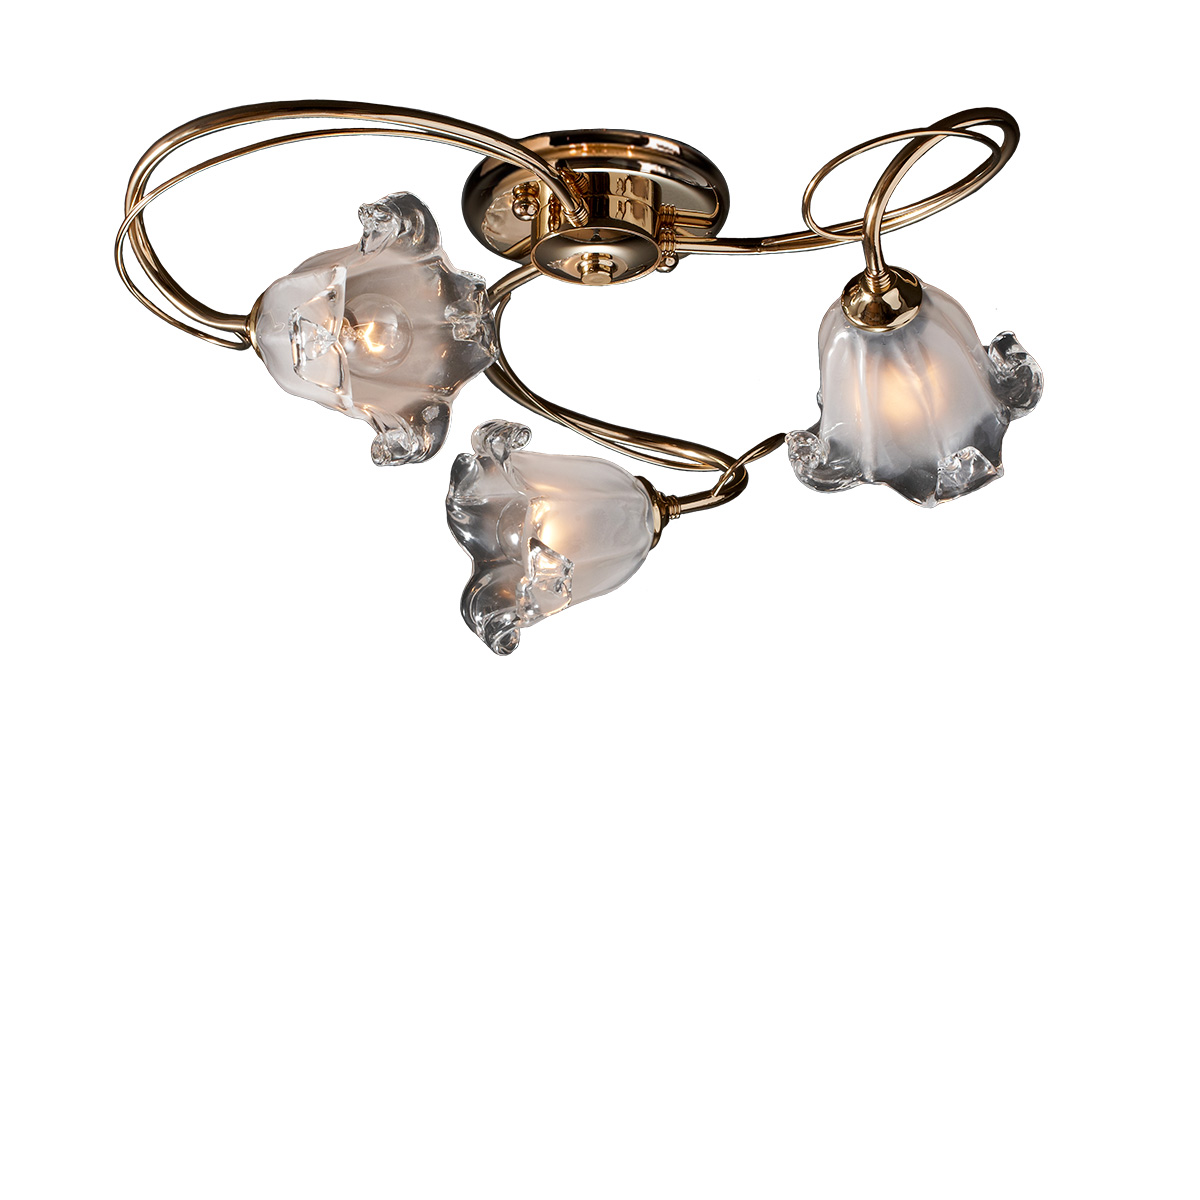 Φωτιστικό με κρύσταλλα Murano ΝΥΜΦΑΙΟ ceiling lamp with Murano crystals